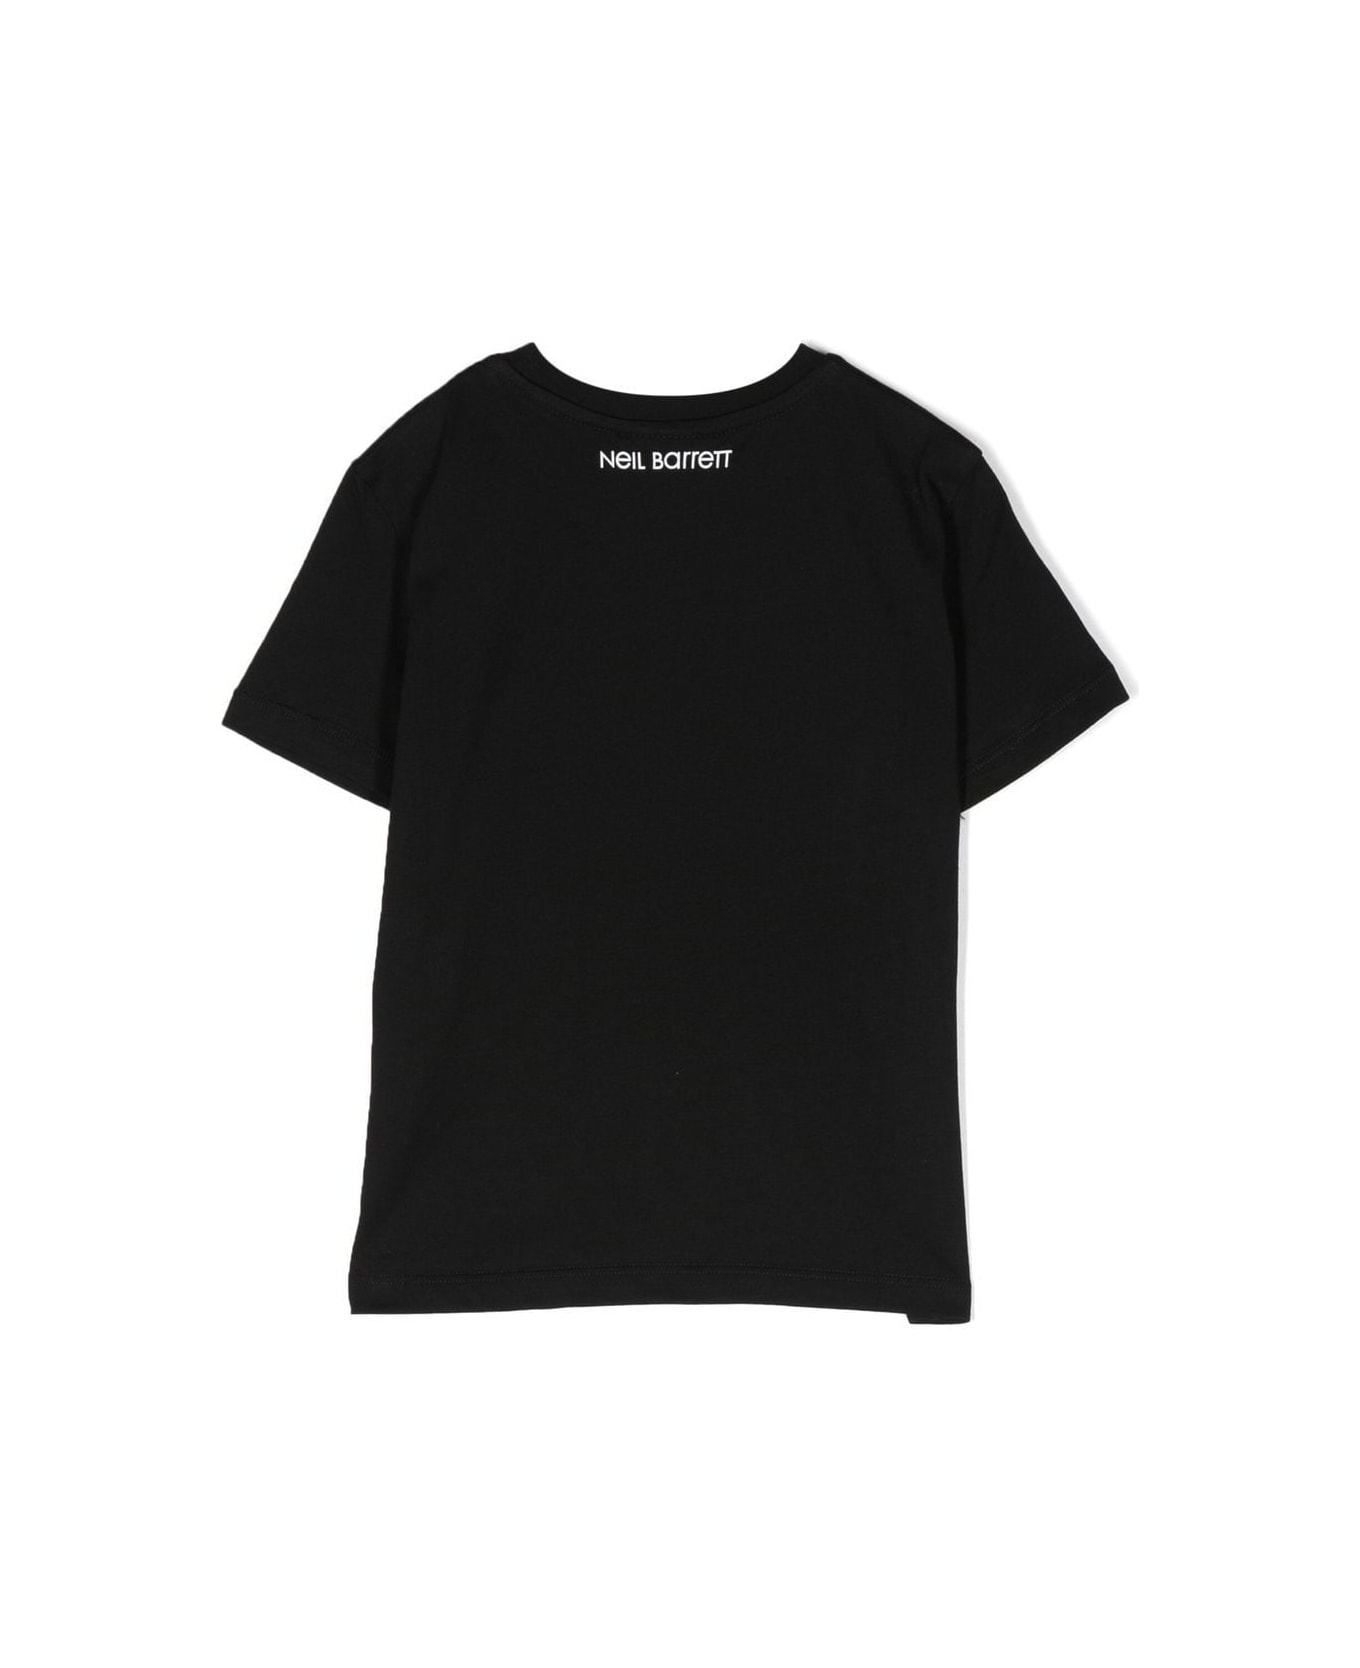 Neil Barrett T-shirt With Print - Black